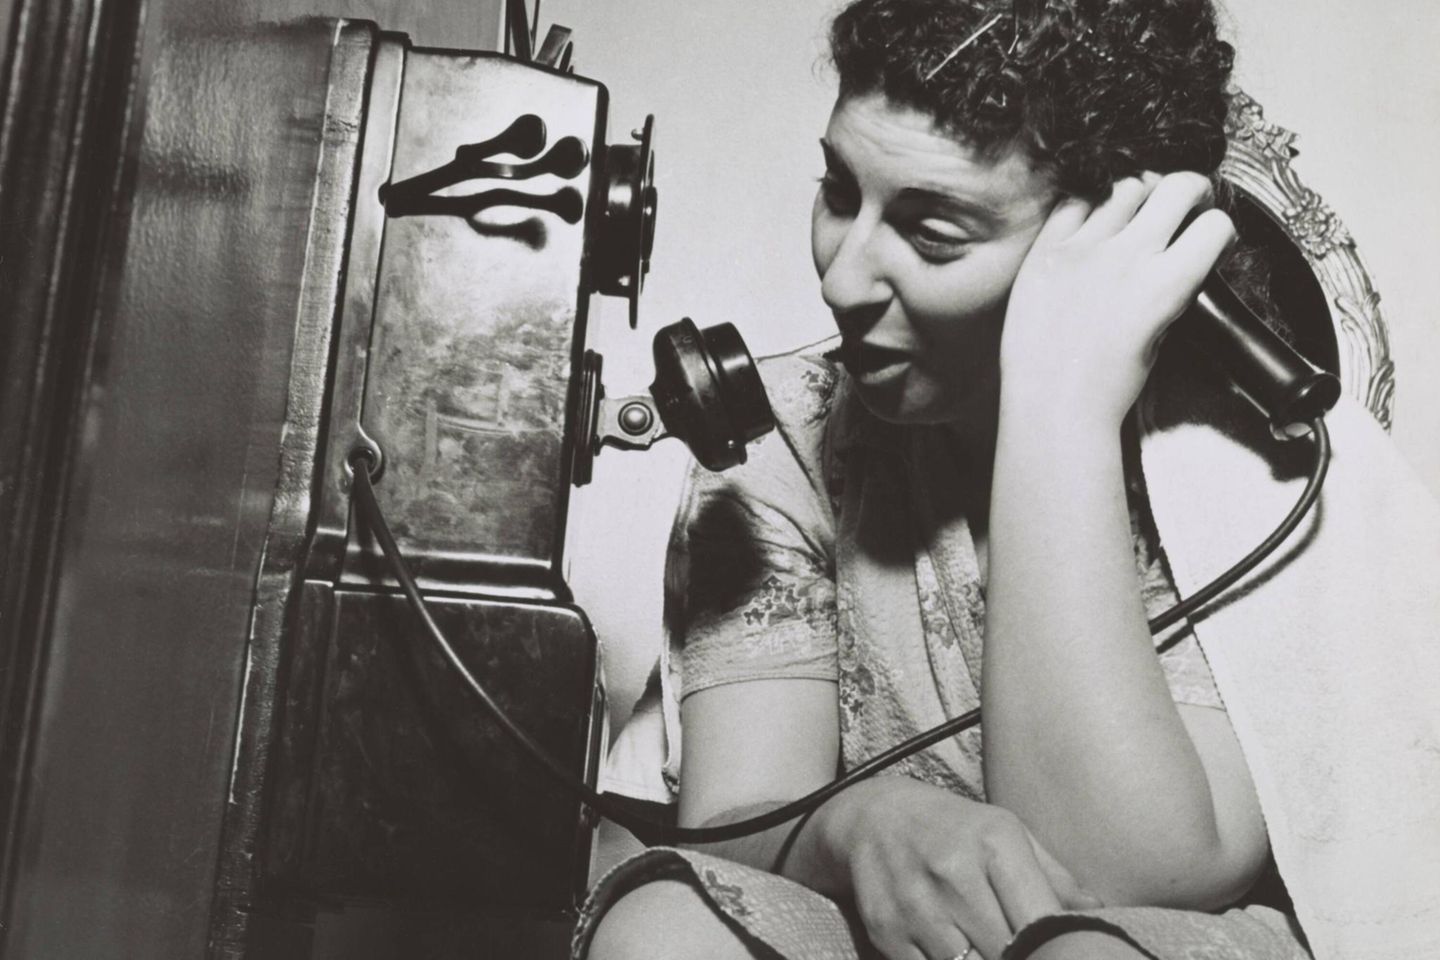 Frau am telefonieren, 1943